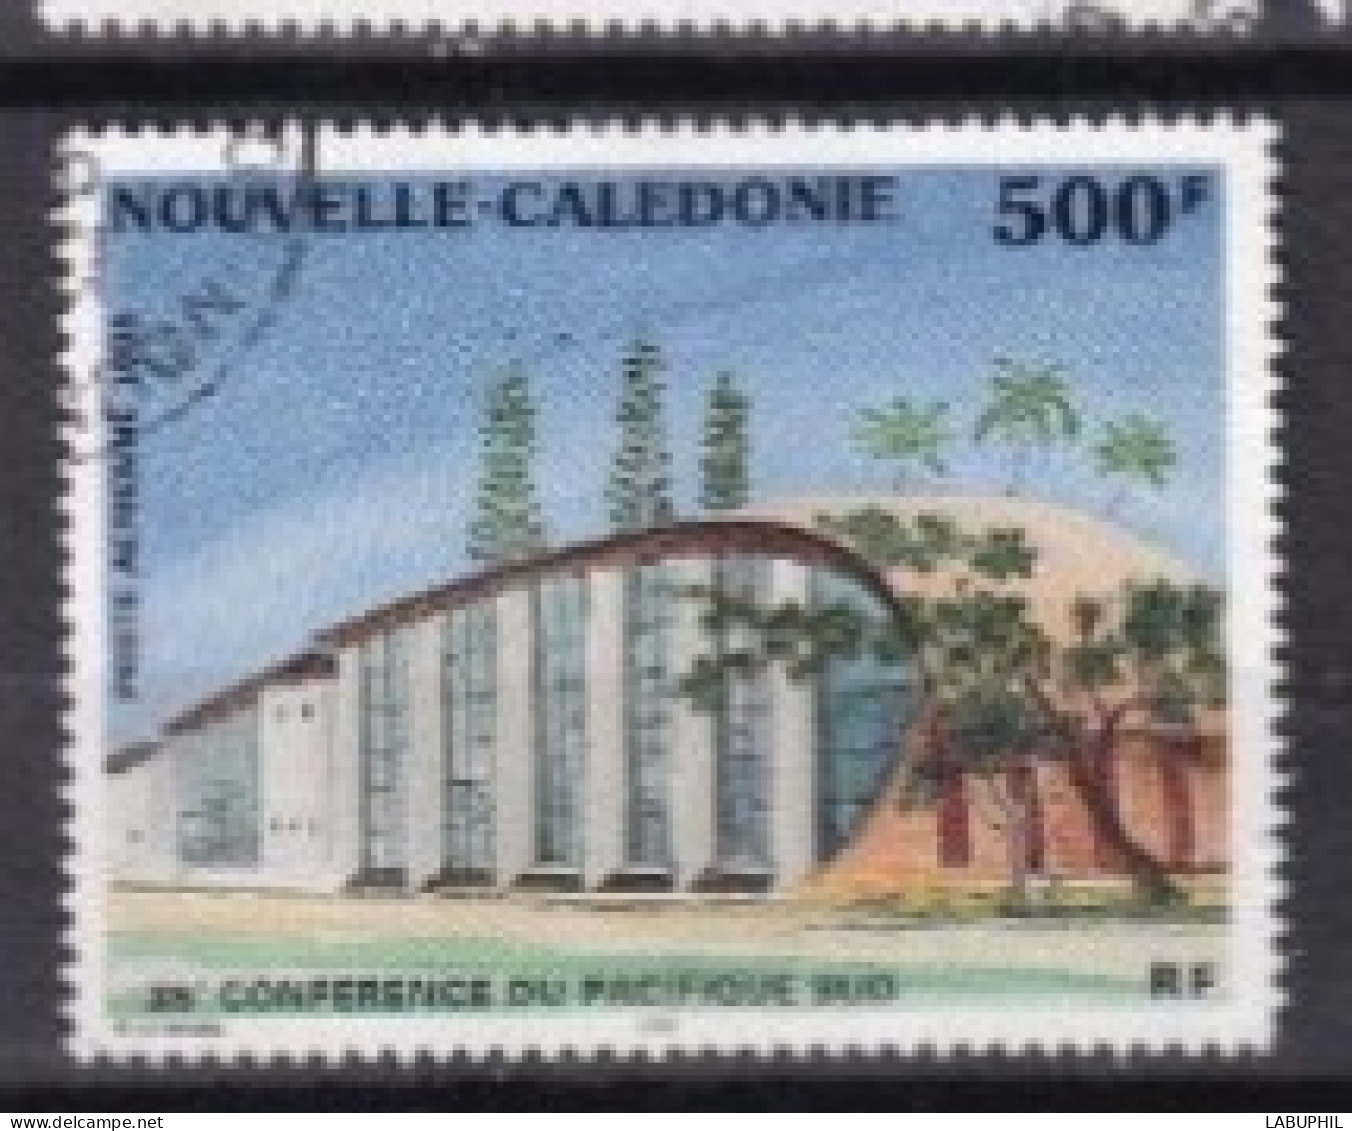 NOUVELLE CALEDONIE Dispersion D'une Collection Oblitéré Used   Poste Aerienne 1995 - Usati